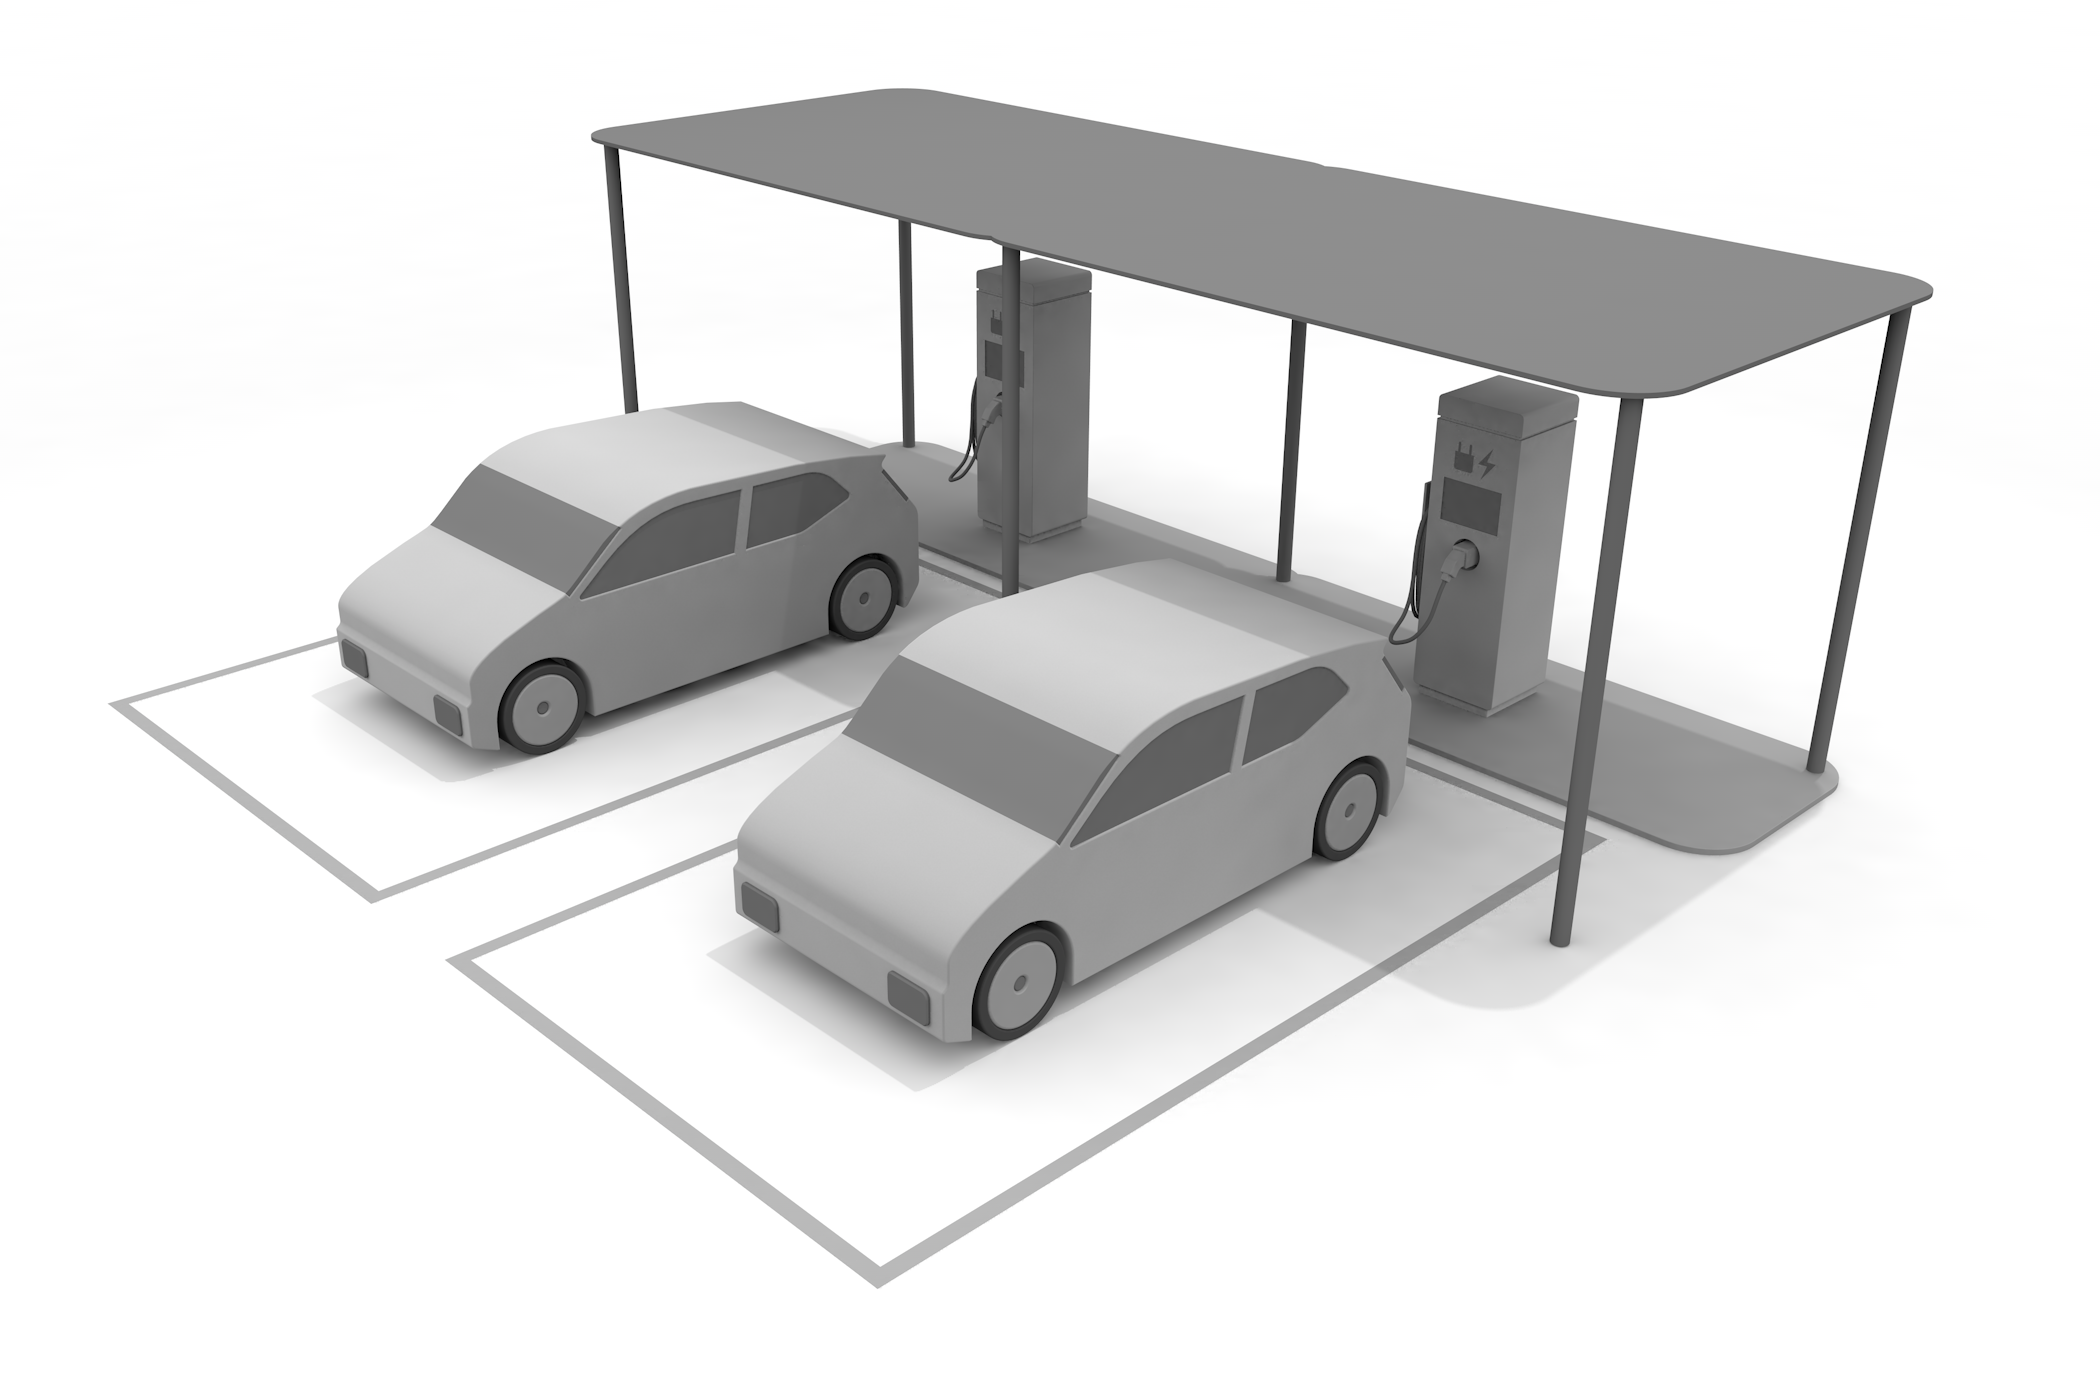 EV car / Plug-in hybrid / PHV / Battery / Global warming --Illustration / 3D rendering / Free material / Commercial use OK